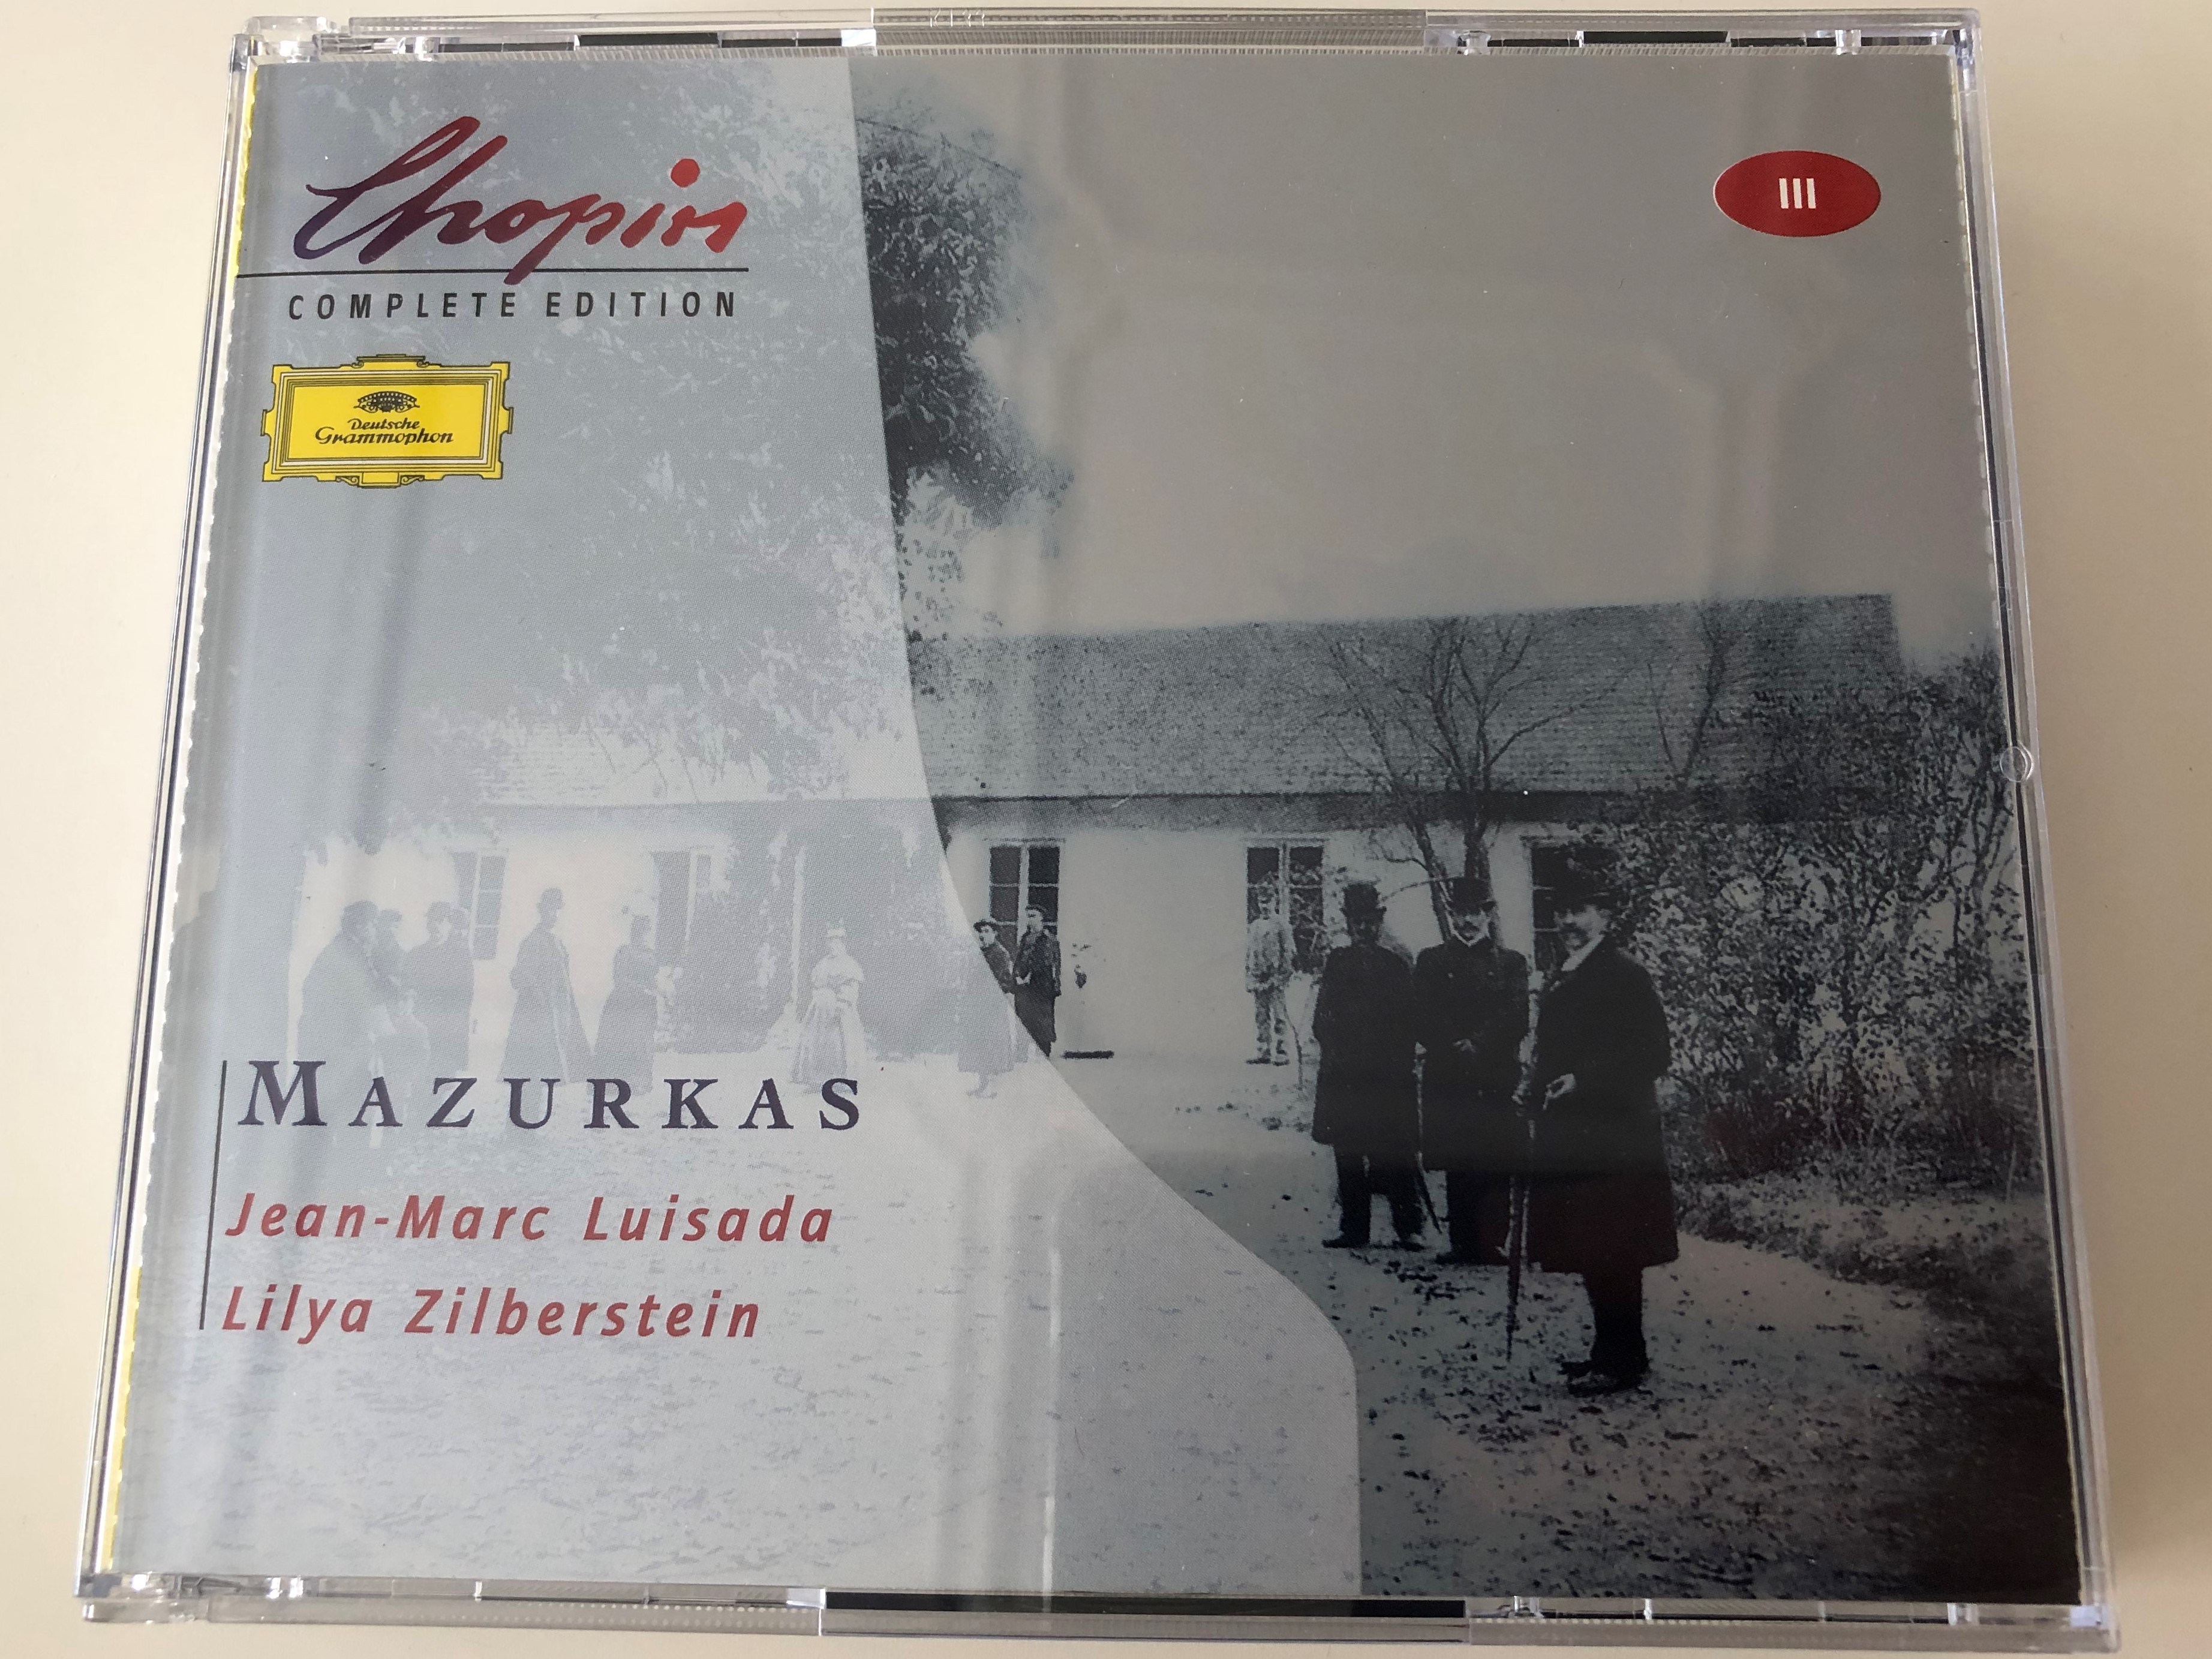 chopin-complete-edition-vol-iii-mazurkas-jean-marc-luisada-lilya-zilberstein-deutsche-grammophon-2x-audio-cd-stereo-463-054-2-1-.jpg